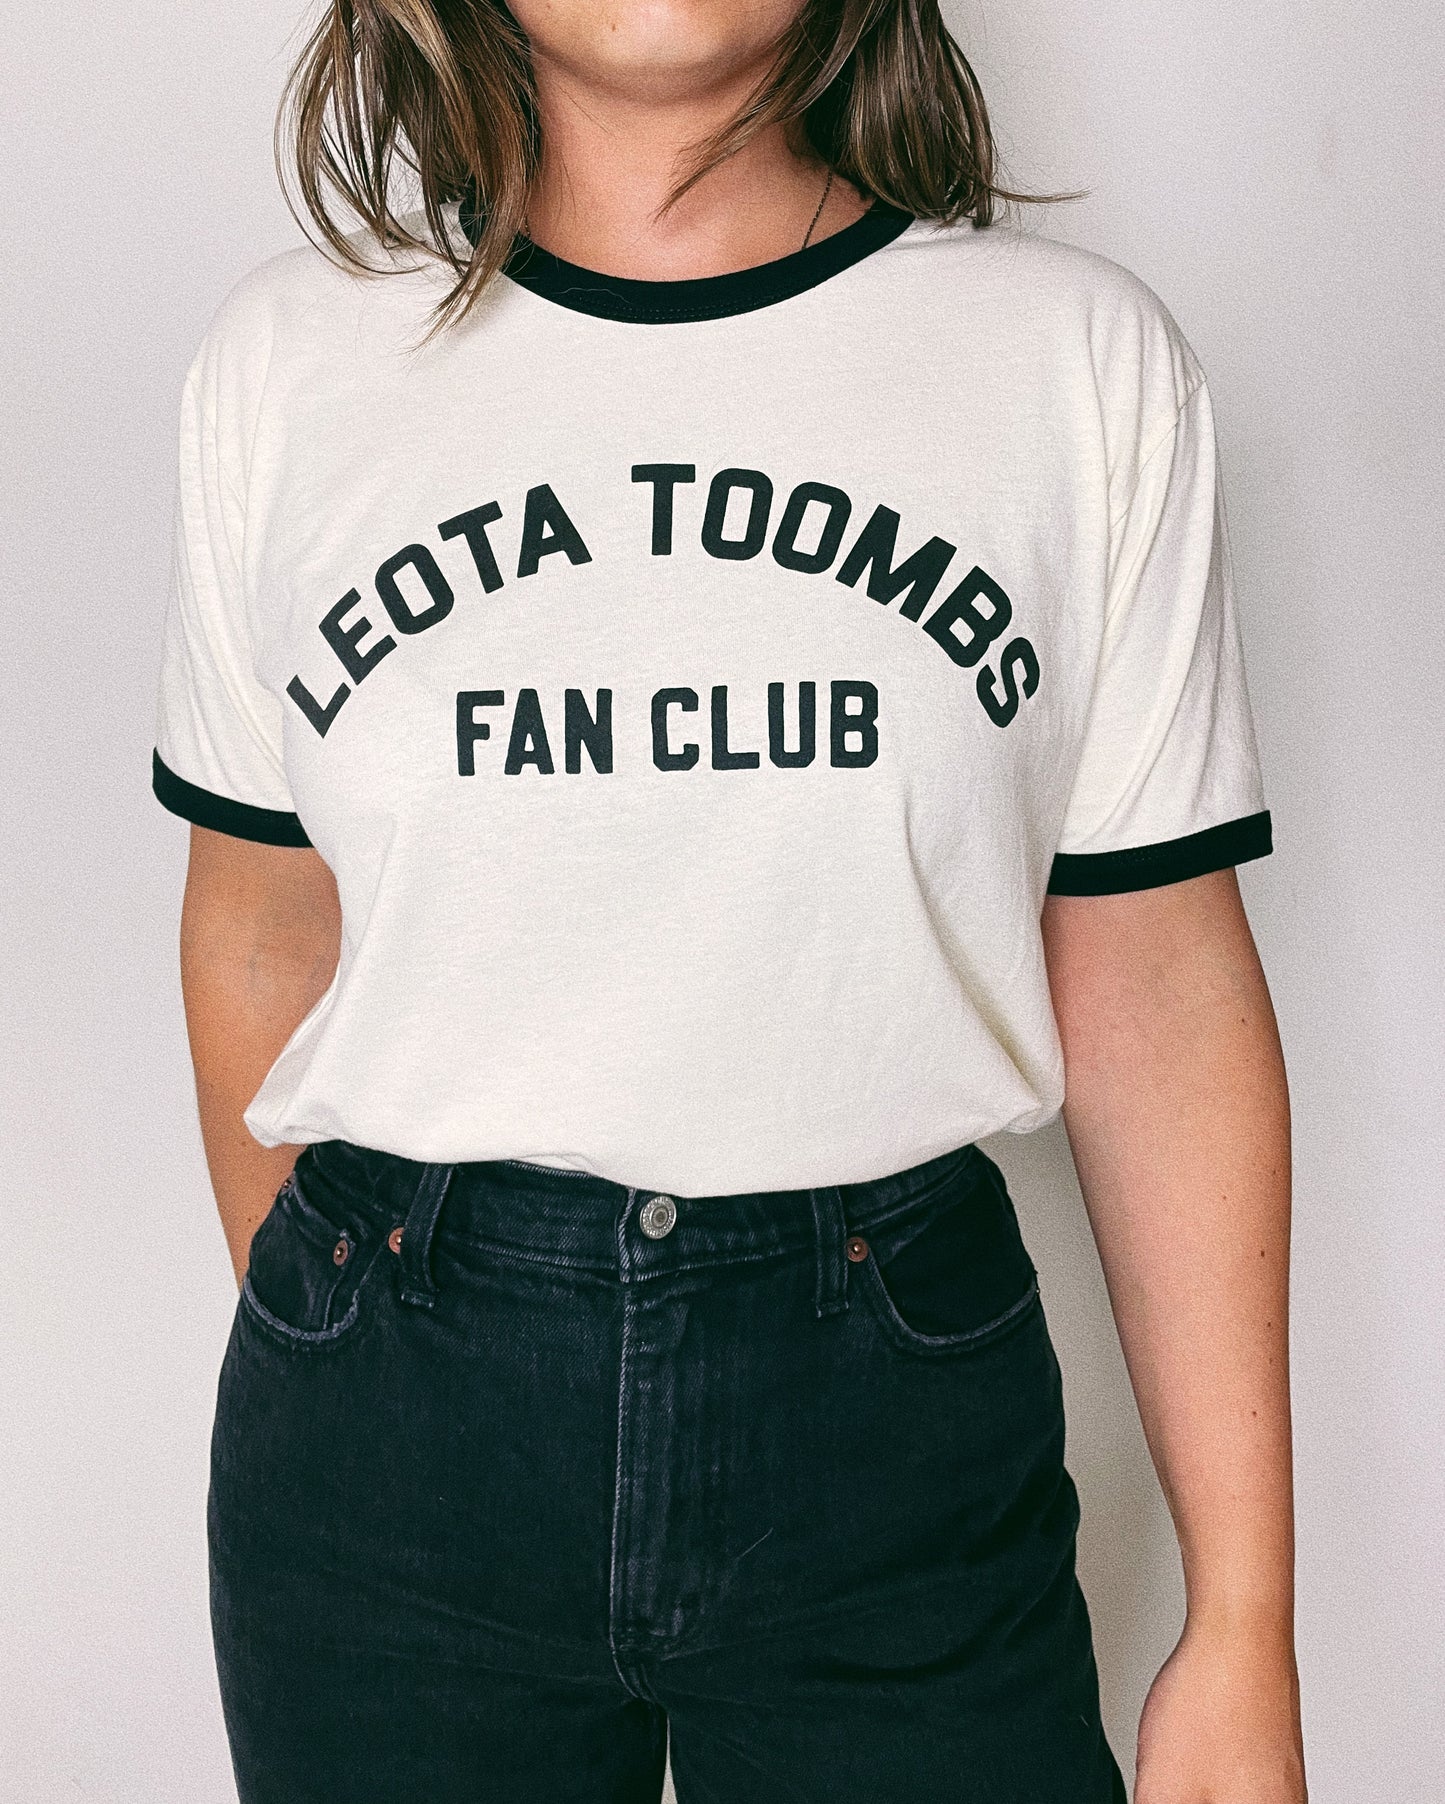 The Leota Toombs Fan Club T-Shirt